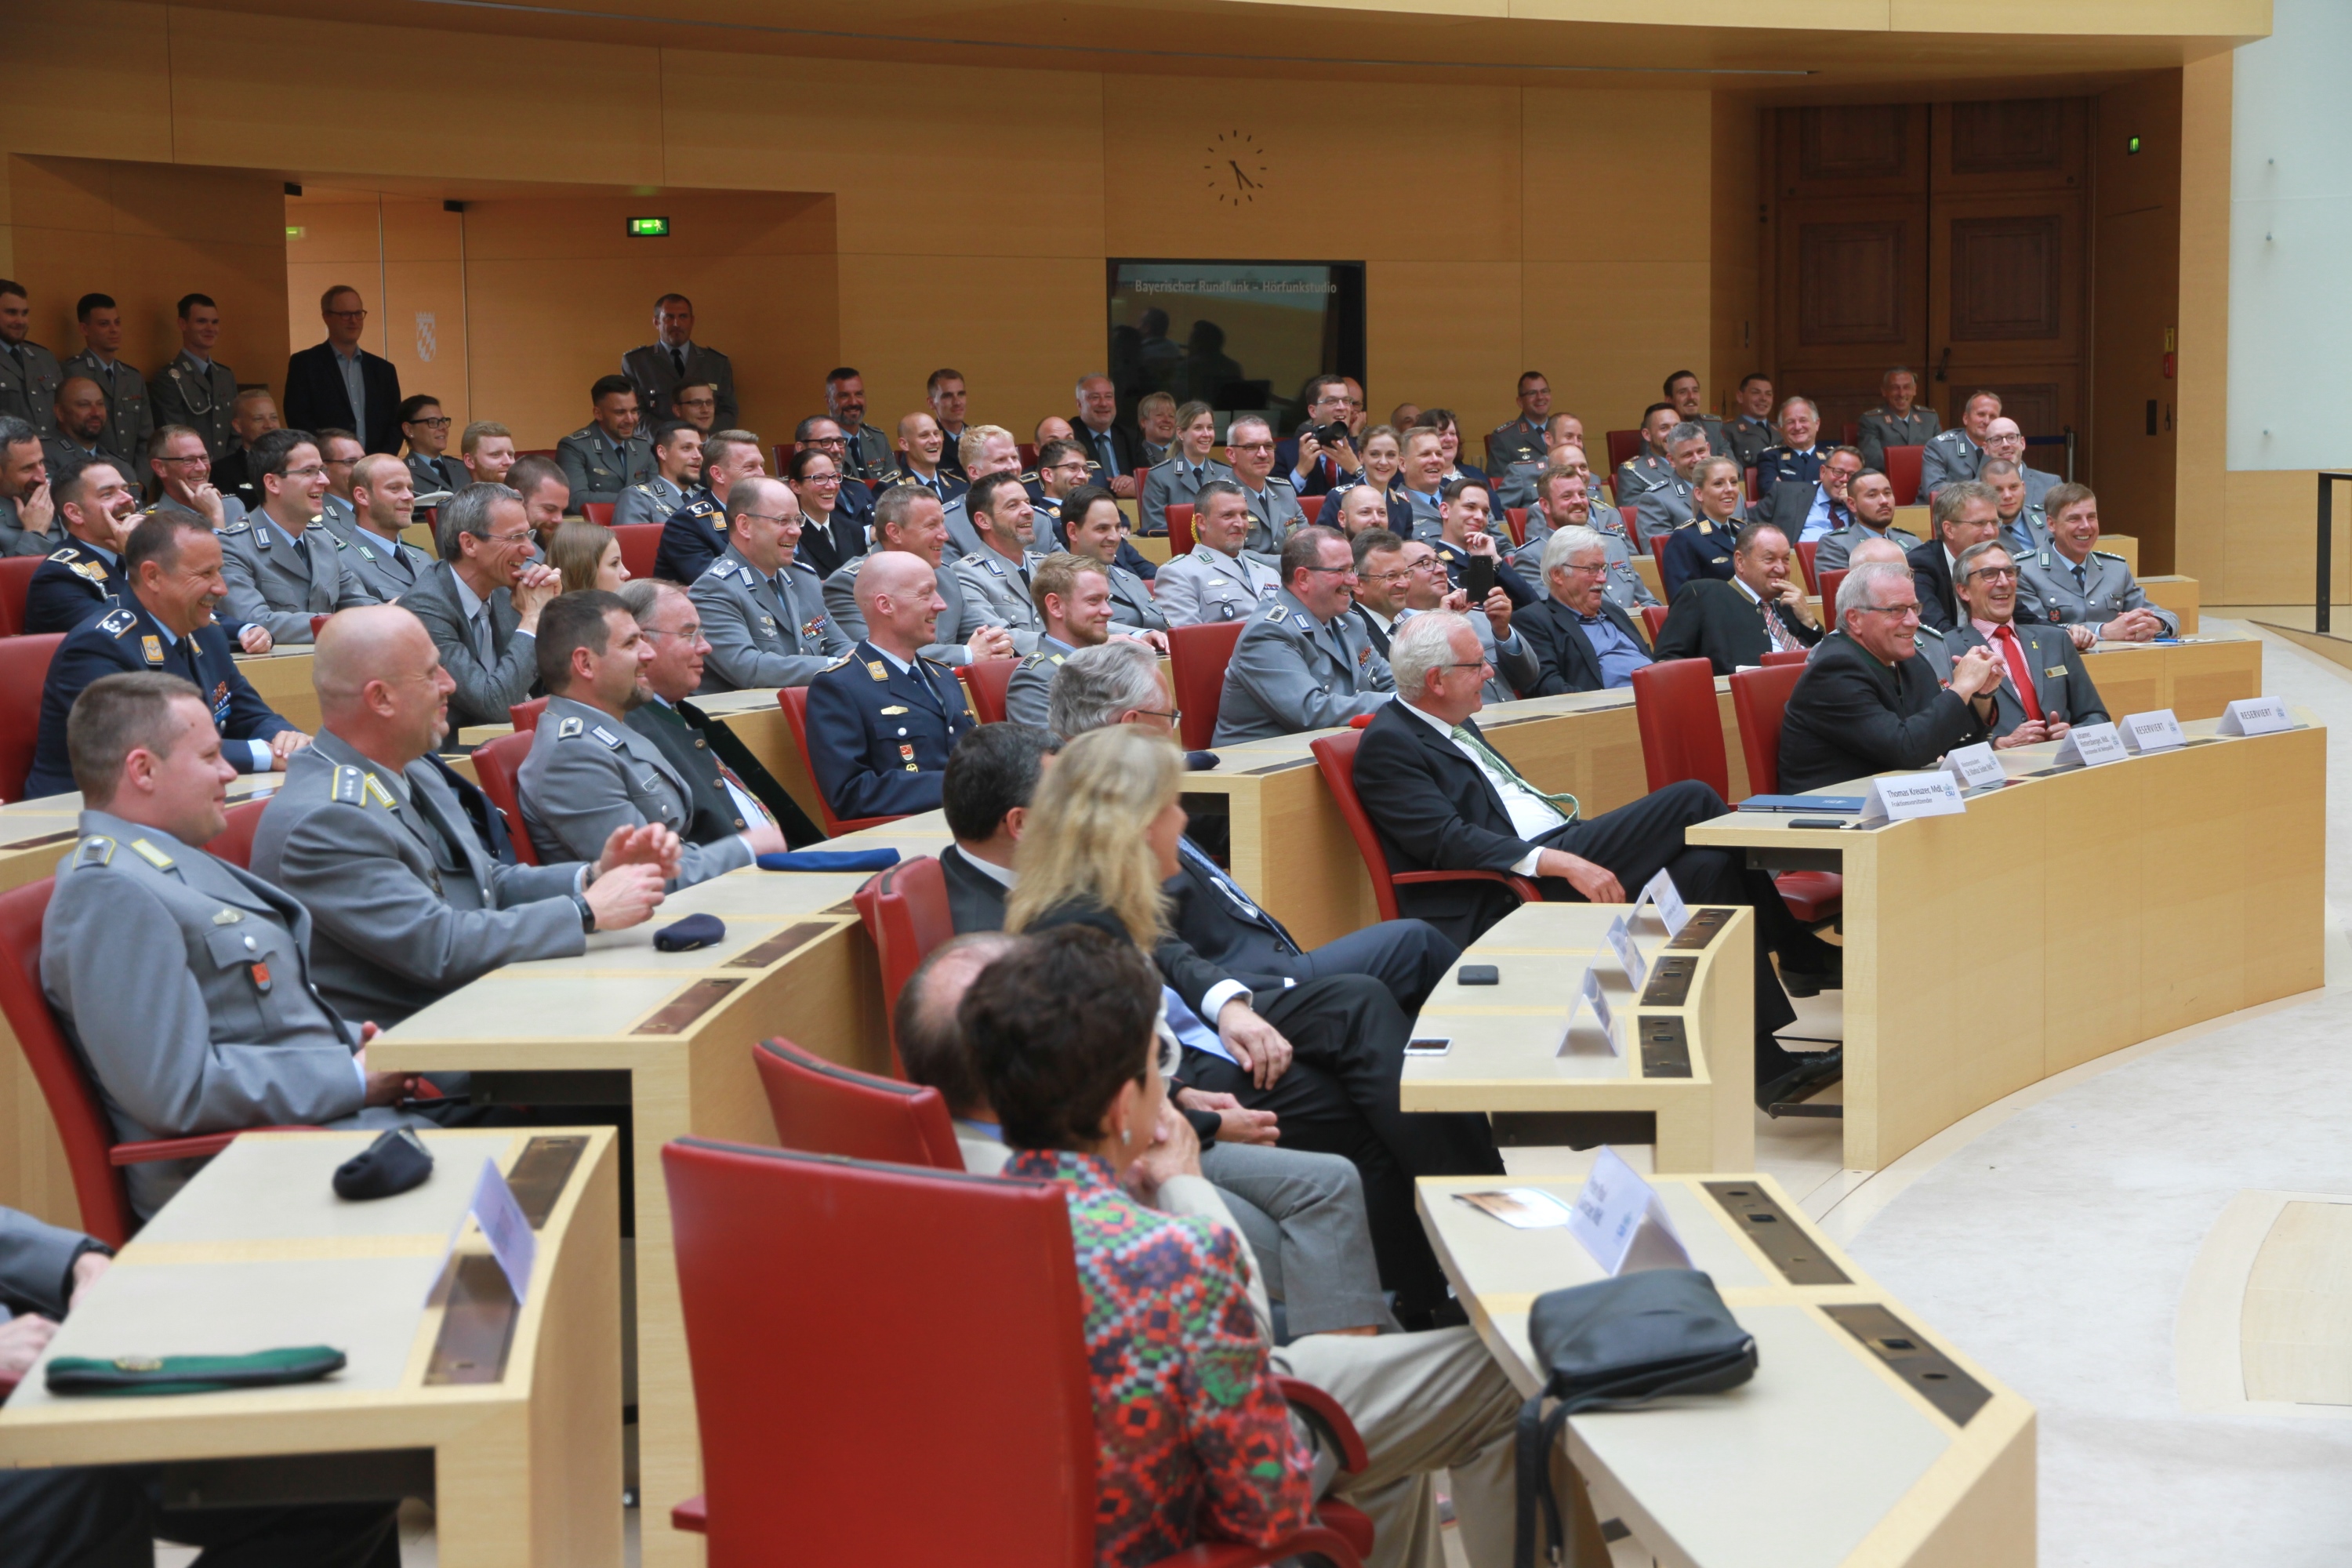 Gute Stimmung im voll besetzten Plenarsaal des Bayerischen Landtags. Die Vertreter der bayerischen Bundeswehrstandorte ließen es sich nicht nehmen, in Uniform zu erscheinen. (Foto: CSU-Fraktion)